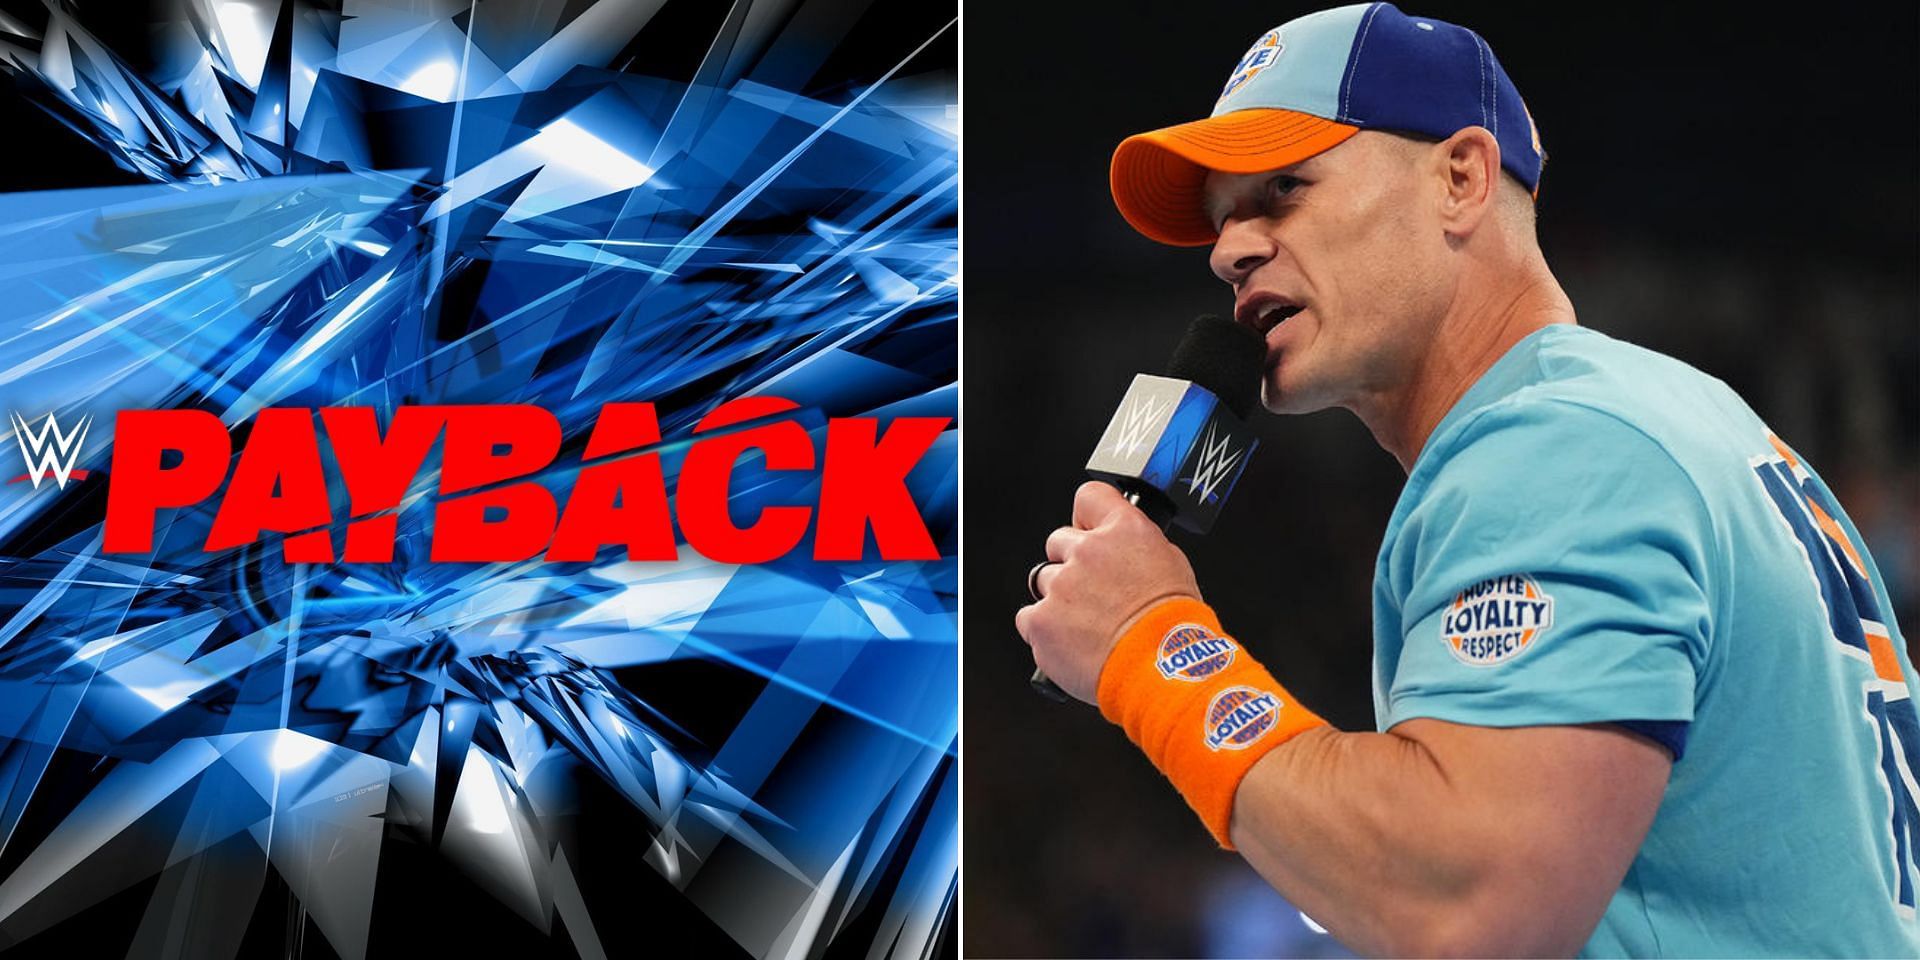 John Cena returned to WWE on SmackDown